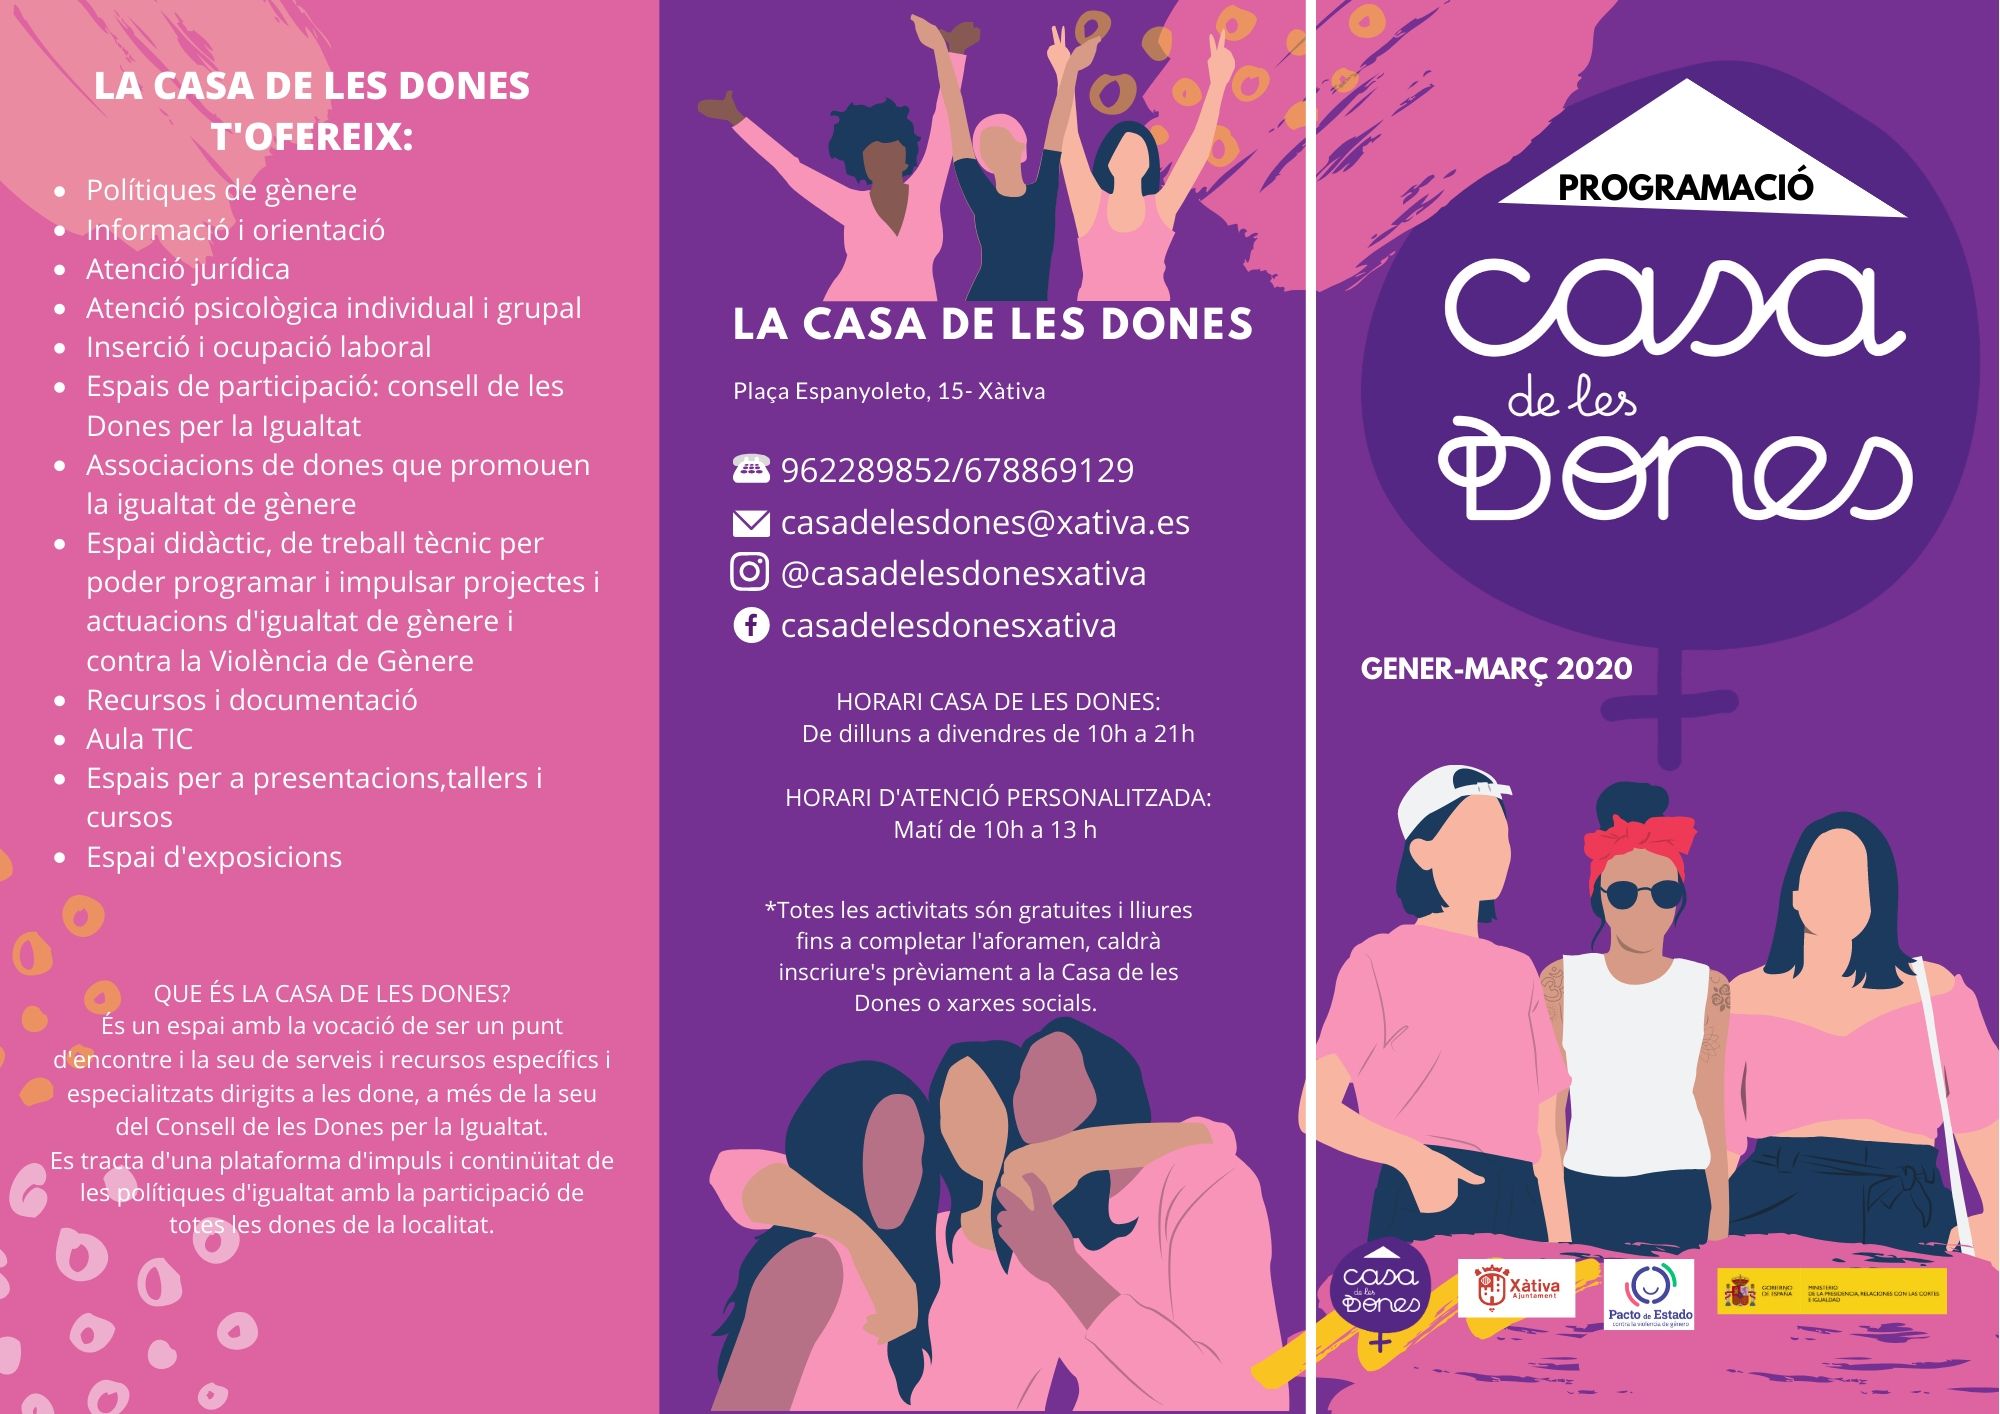 La Casa de les Dones de Xàtiva publica su programación Enero-Marzo 2020